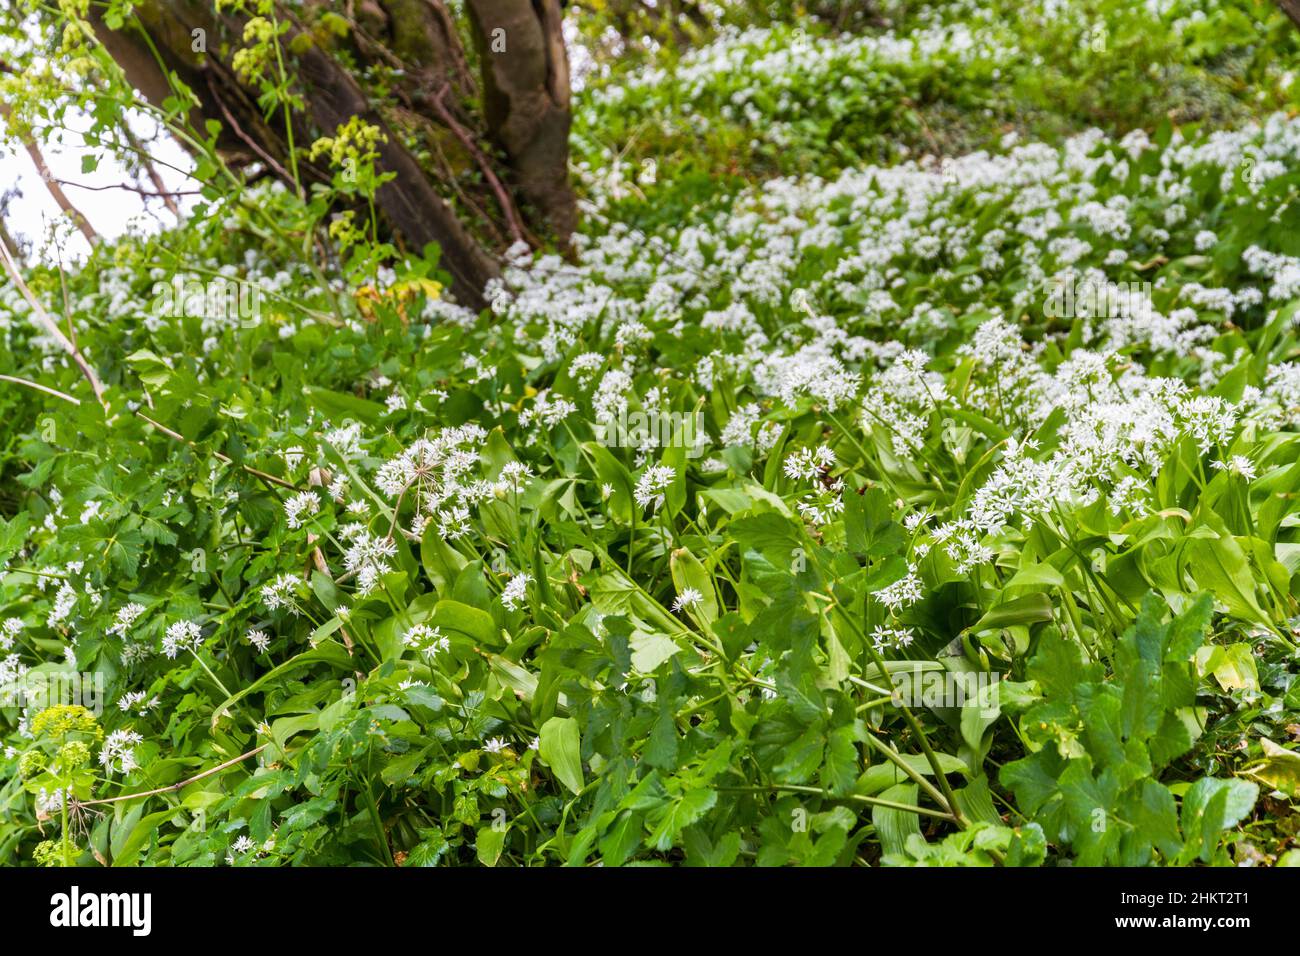 Fondo o textura de banco de verde ajo silvestre con flores blancas. Foto de stock